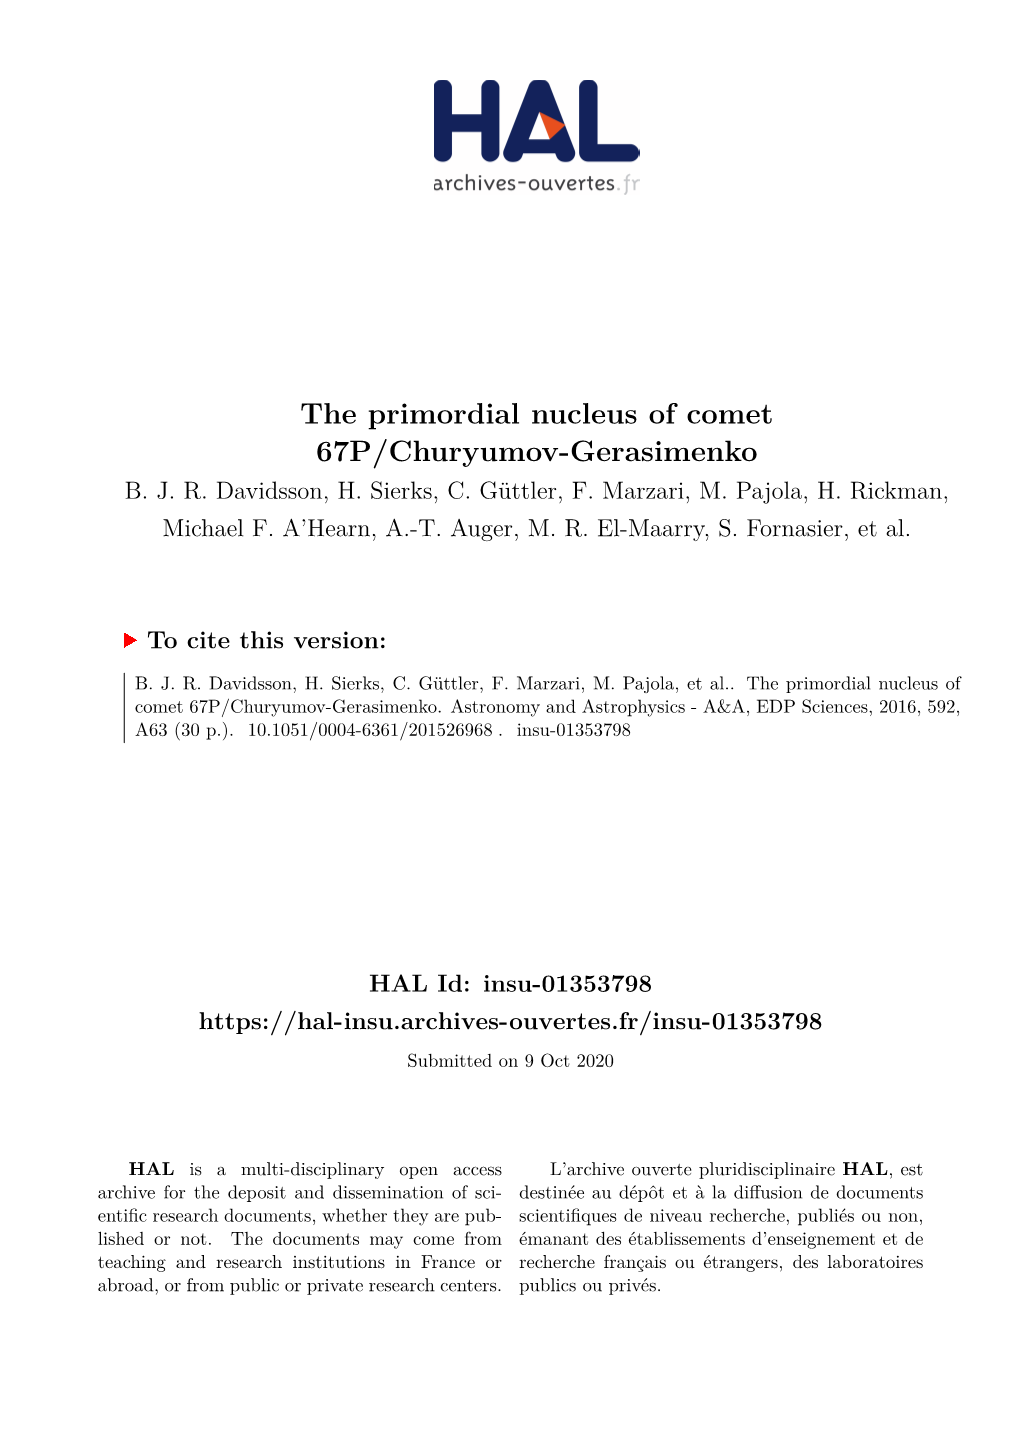 The Primordial Nucleus of Comet 67P/Churyumov-Gerasimenko B